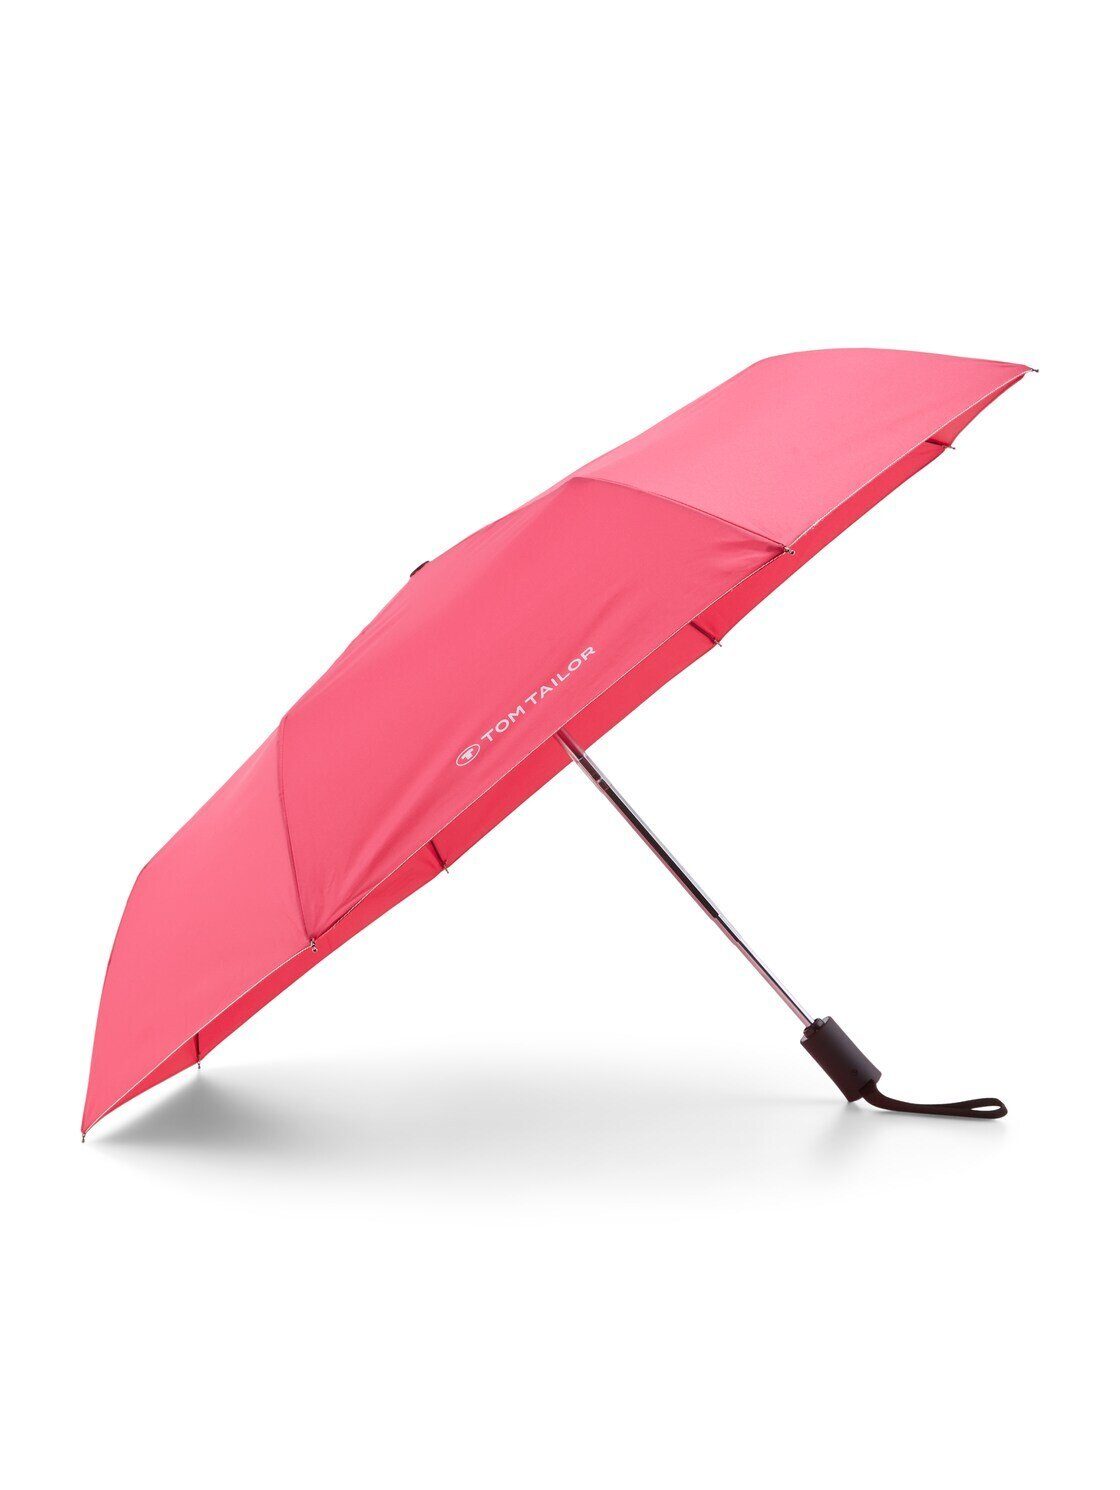 TOM TAILOR Taschenregenschirm Kleiner Automatik Regenschirm magenta pink